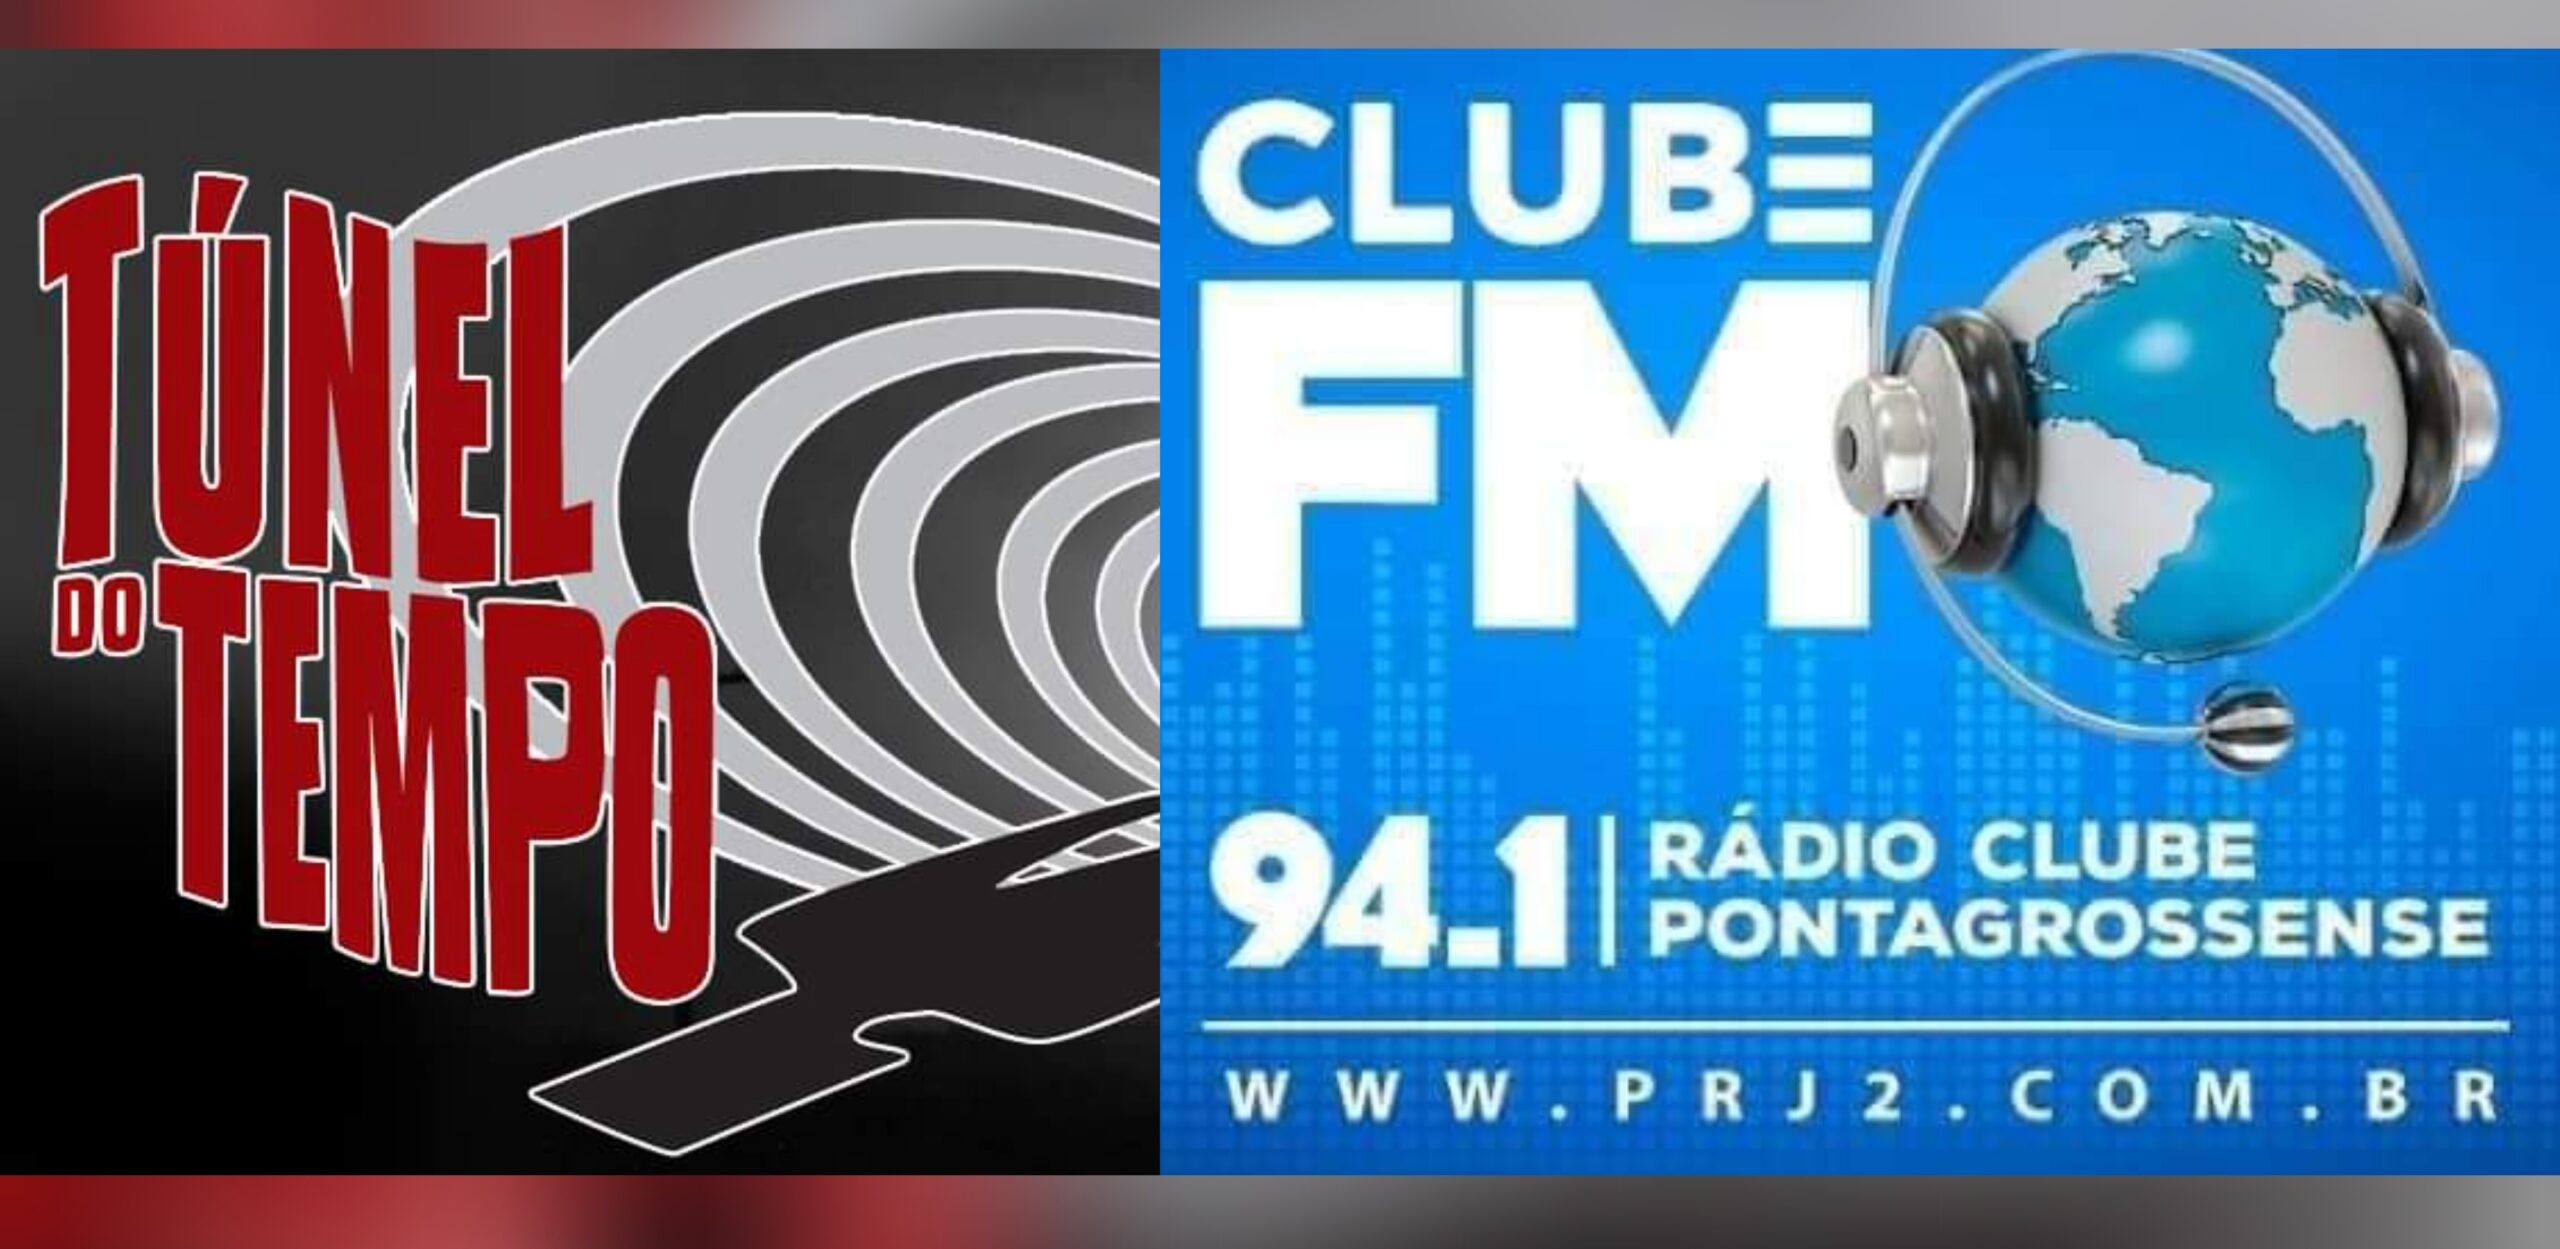 Rádio Clube FM 94.1 - Ponta Grossa / PR - Brasil